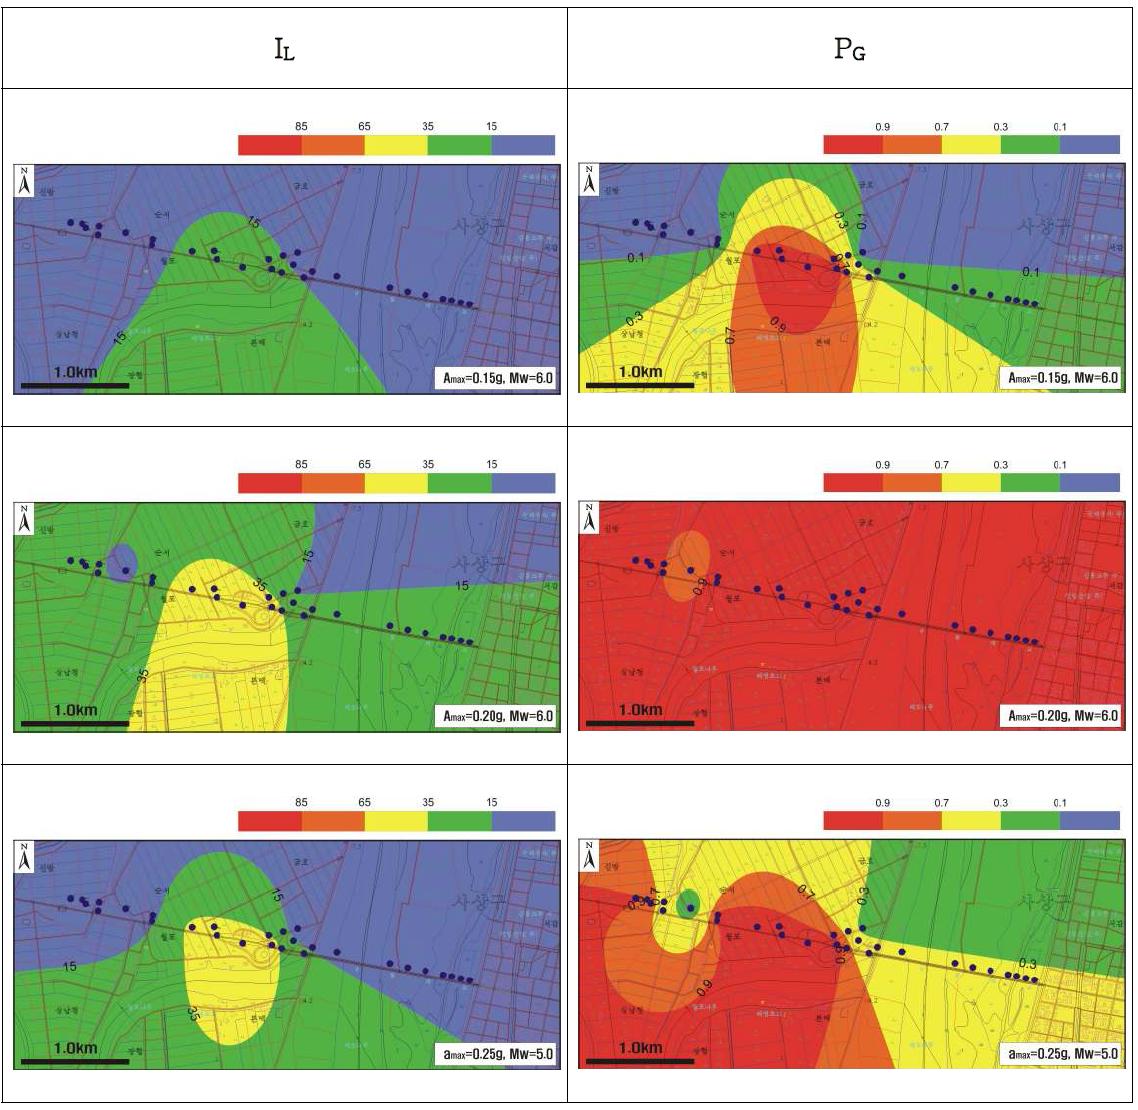 남해고속도로 지역의 콘관입저항치(qc)를 사용한 IL 와 PG 의 지진 규모에따른 액상화 예측지도의 비교